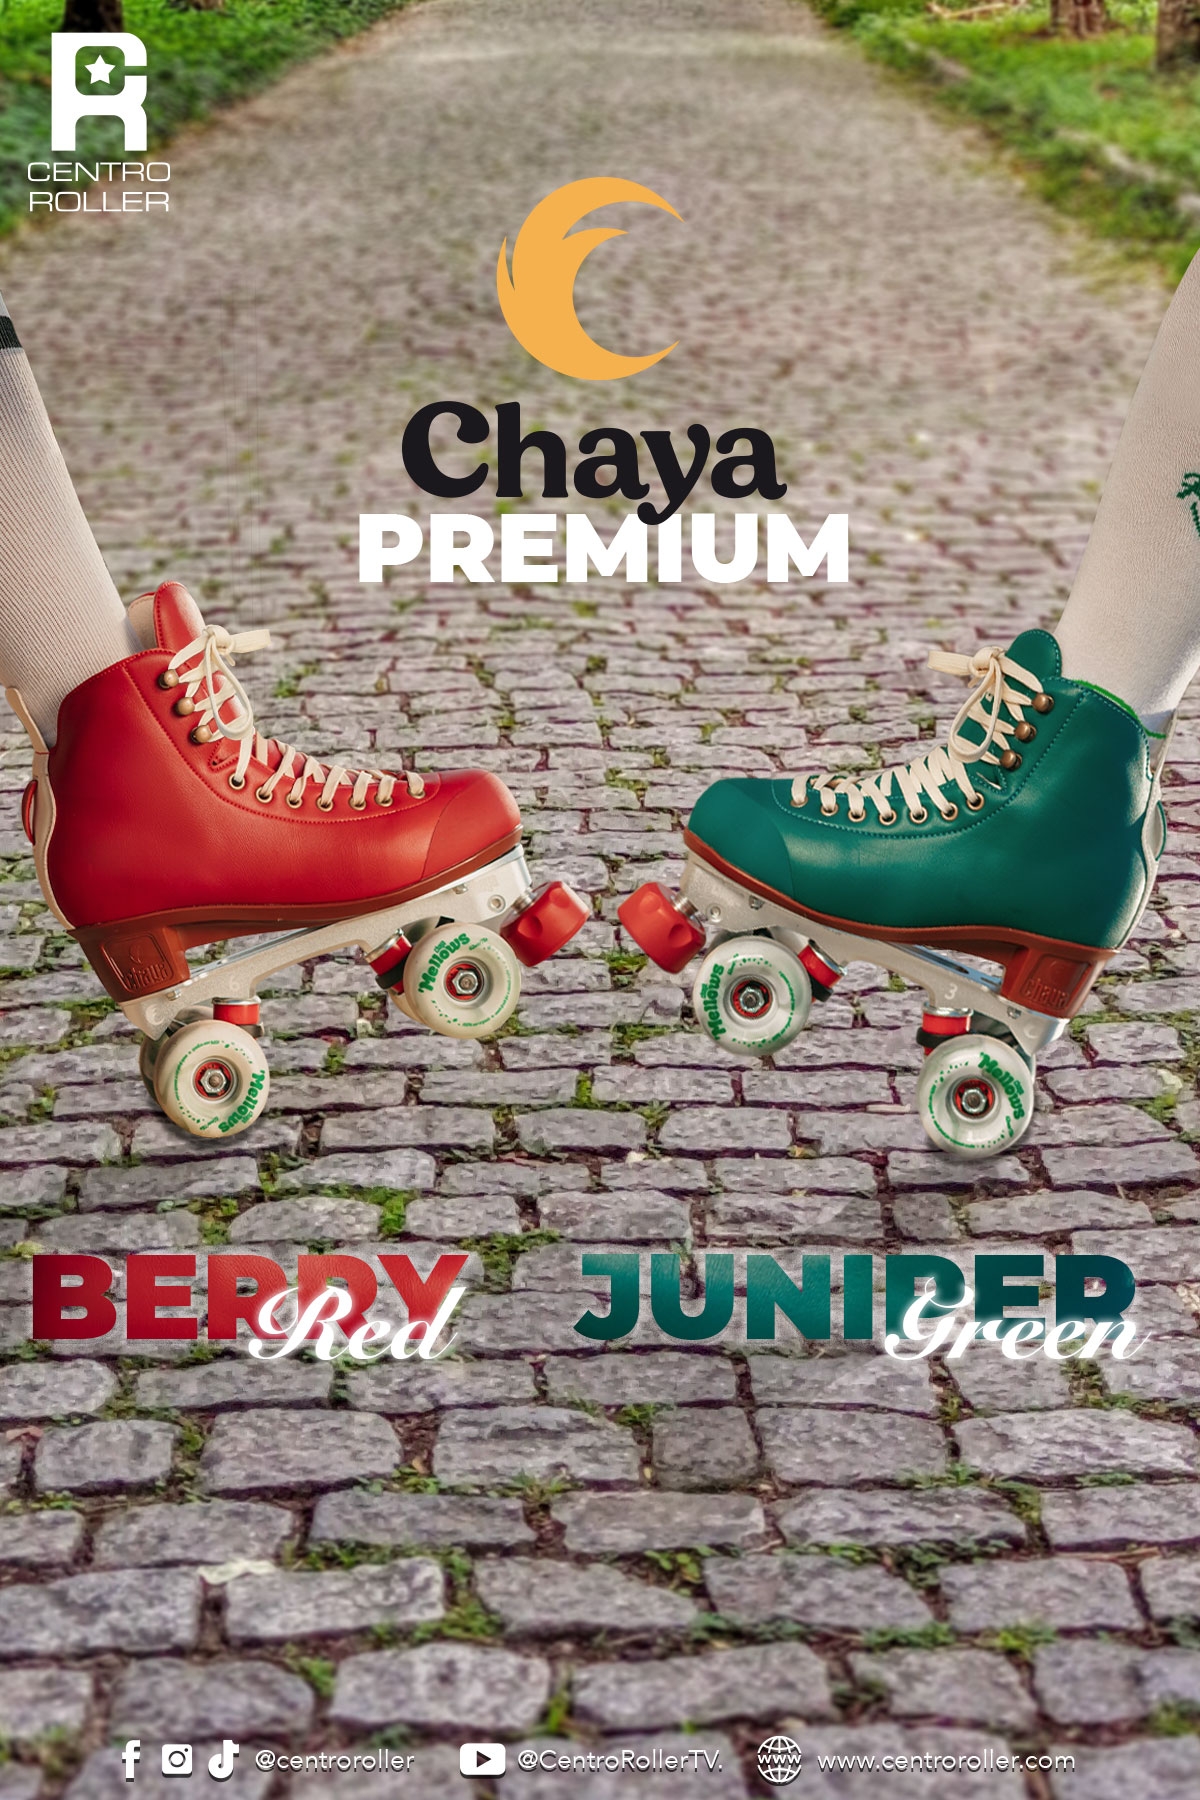 Chaya Premium